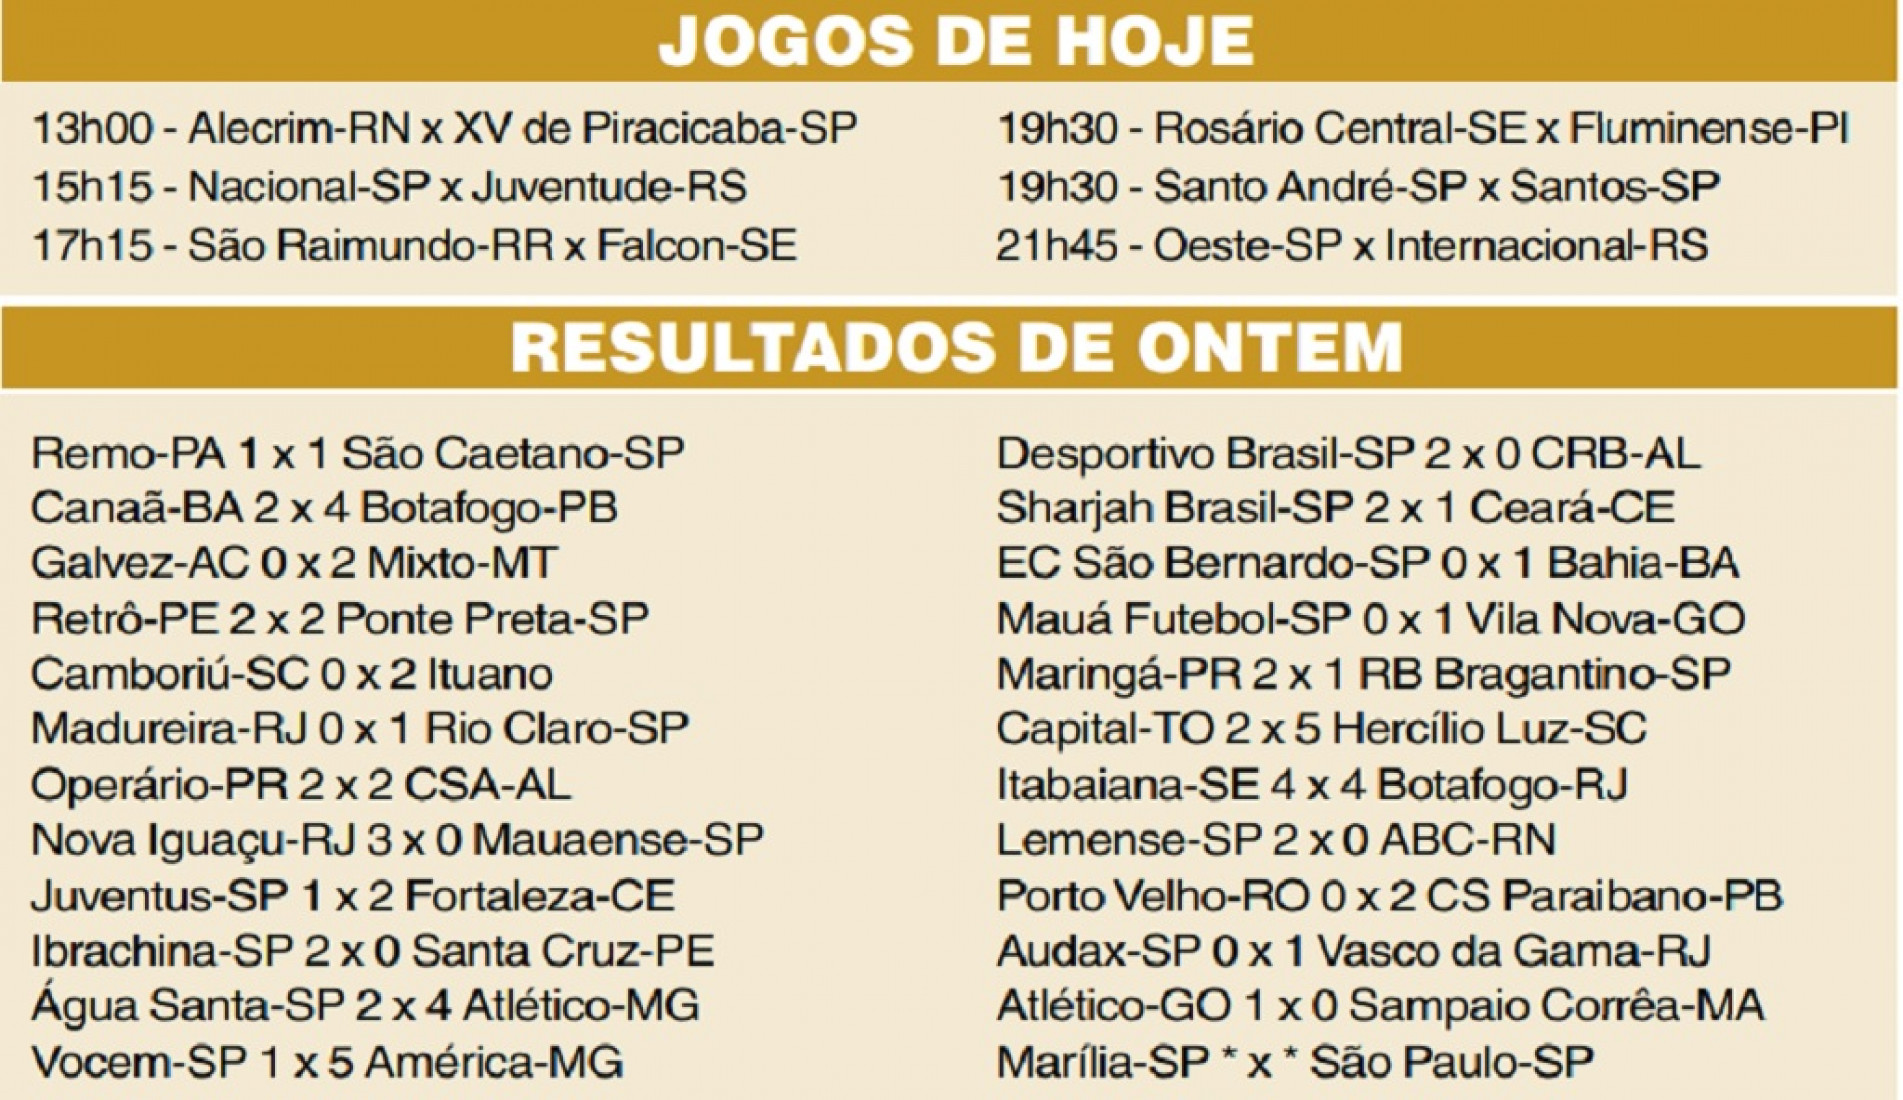 Jogos Rosario Central ao vivo, tabela, resultados